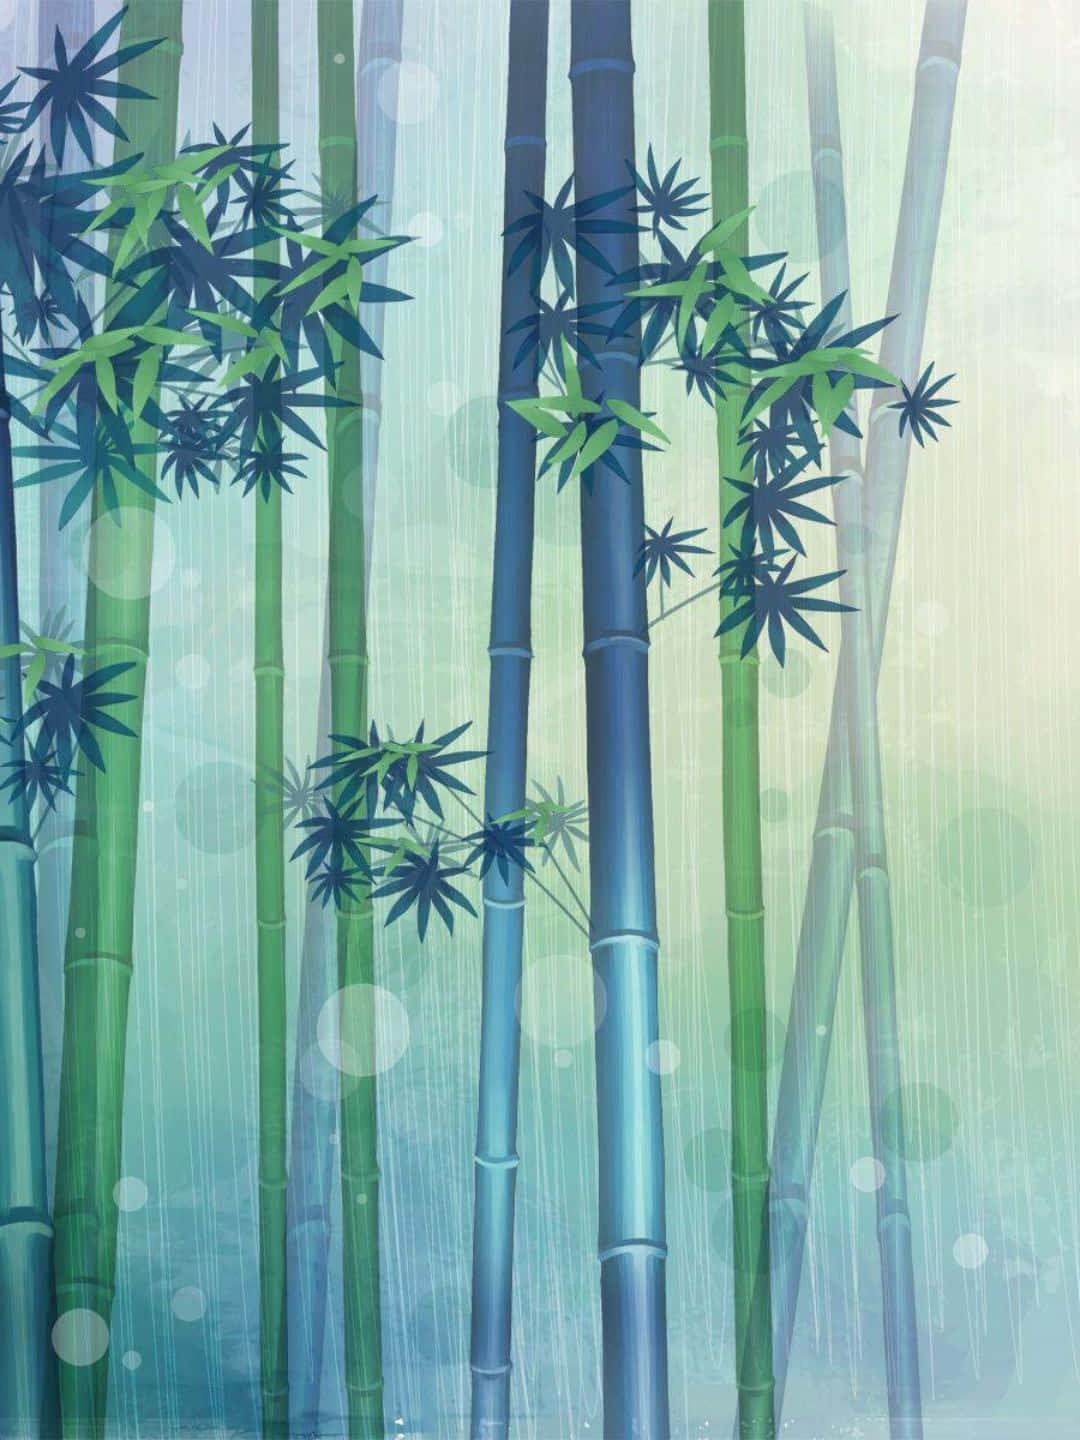 Fundode Tela De Bambu Em 1440p Com Desenho De Fã-arte De Árvores De Bambu Com Folhas.